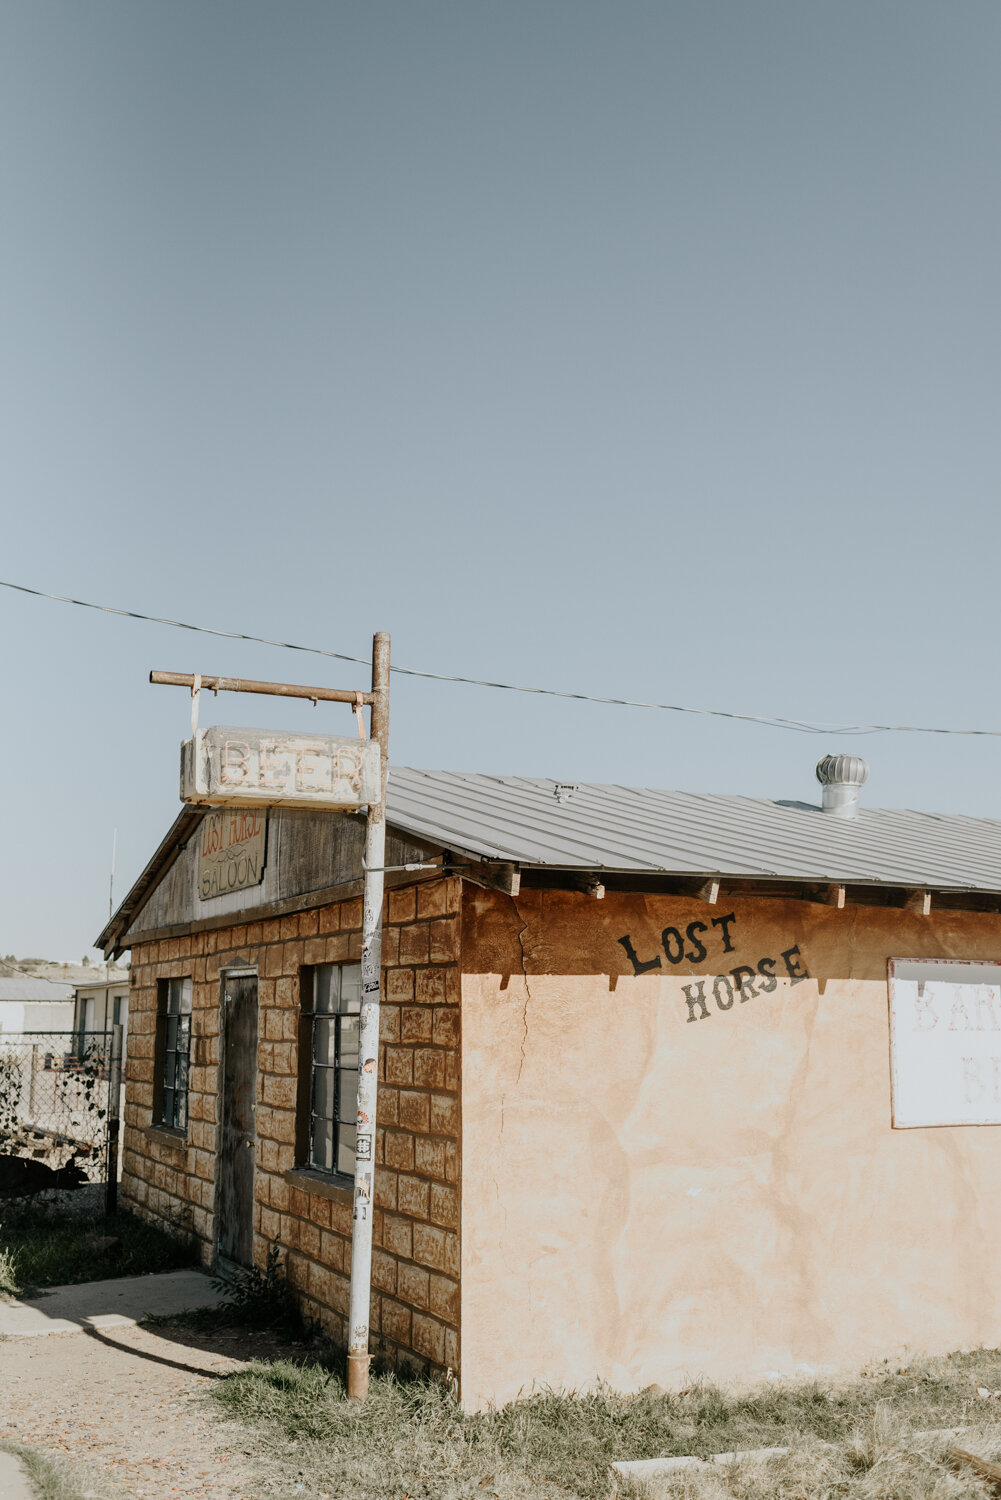 Lost Horse Saloon in Marfa, Texas